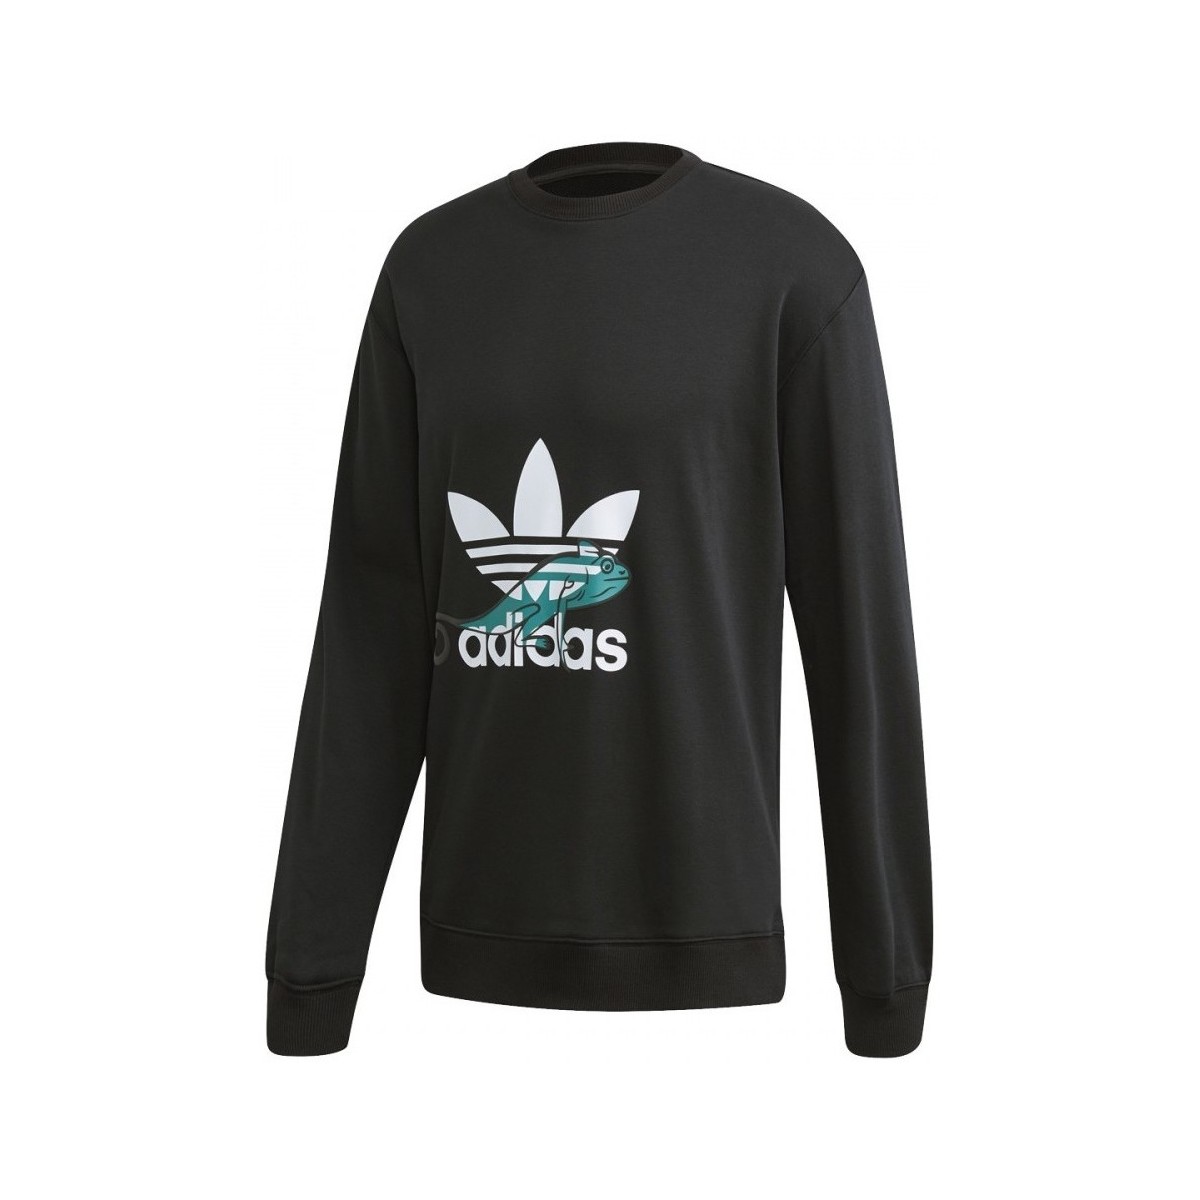 Textiel Heren Sweaters / Sweatshirts adidas Originals Sweatshirt Zwart